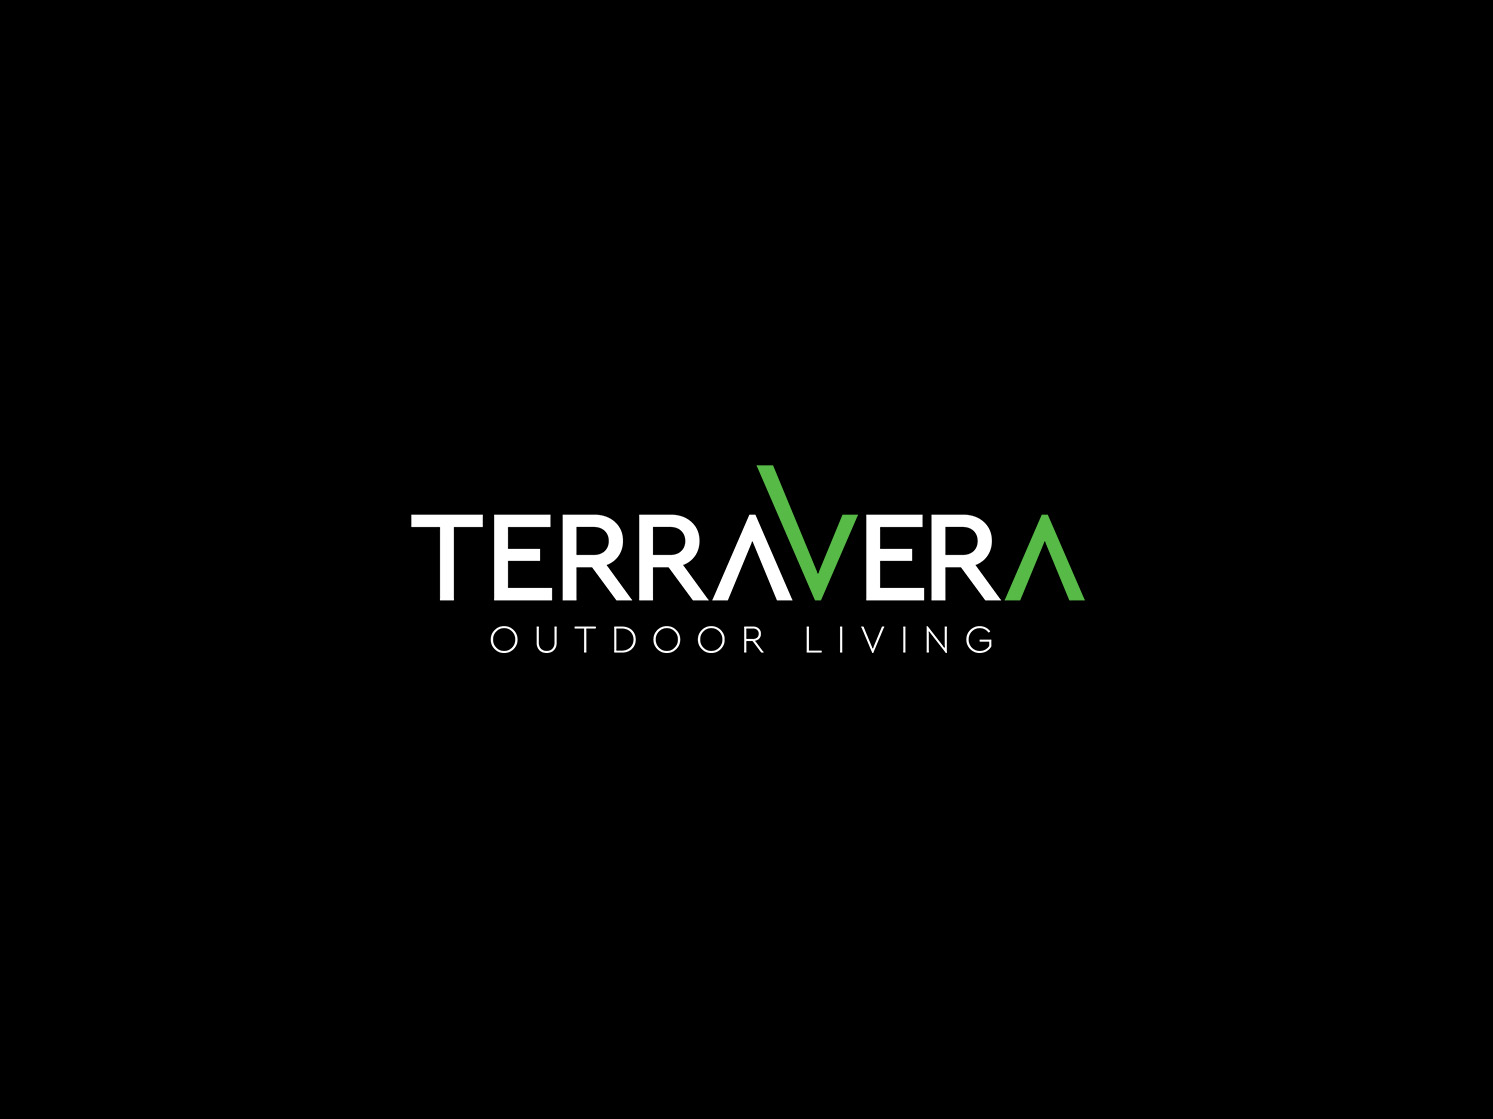 TerraVera Branding, Identity Design and Web Design